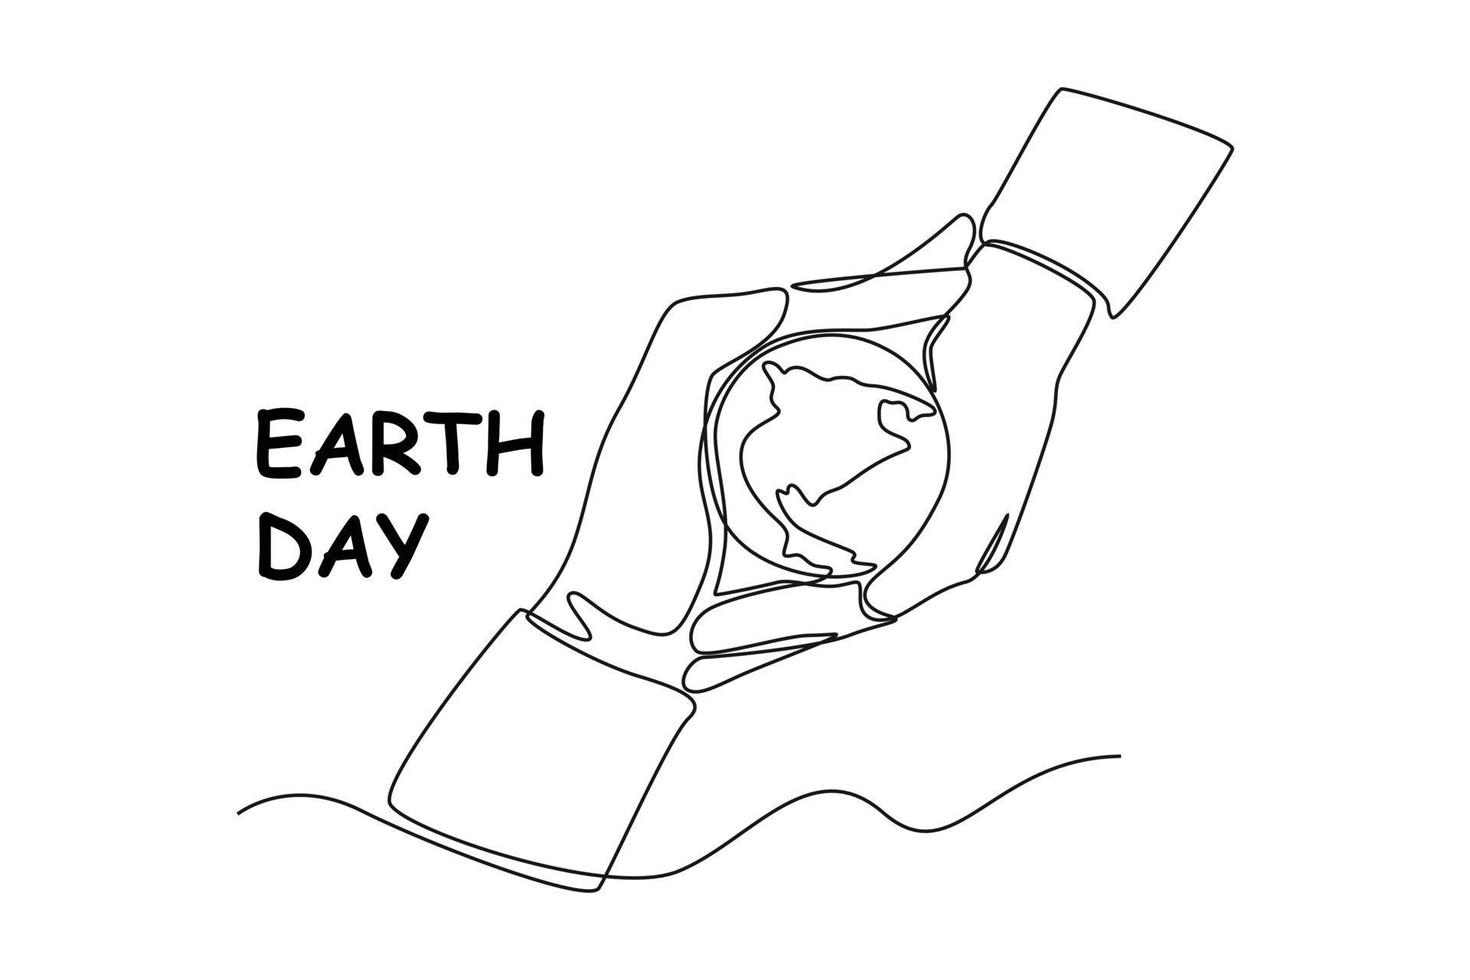 Single eine Linie Zeichnung von zwei Hände umklammern das Erde. Erde Tag Konzept. kontinuierlich Linie zeichnen Design Grafik Vektor Illustration